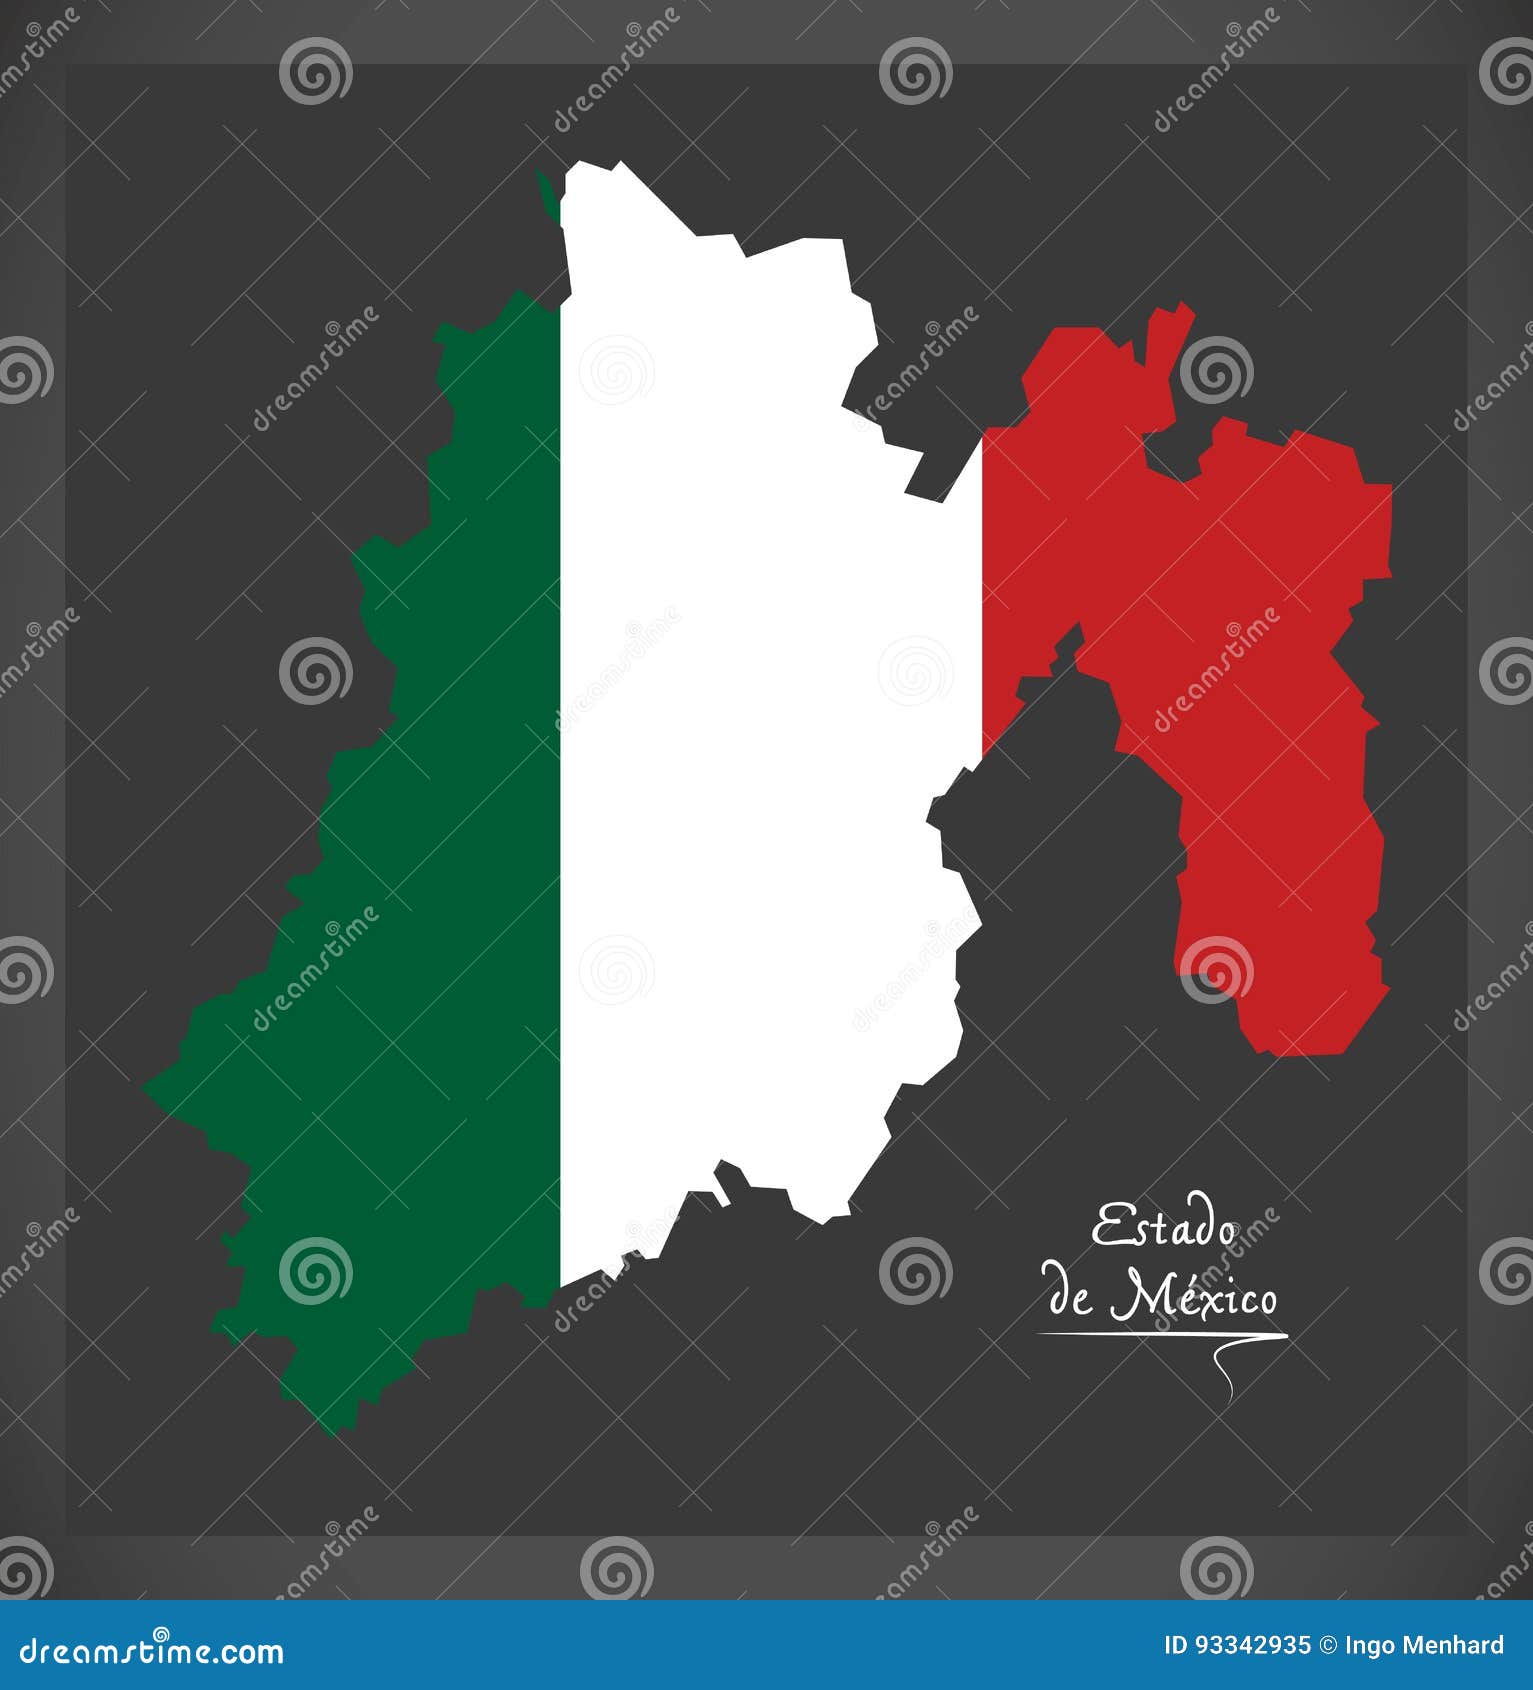 estado de mexico map with mexican national flag 